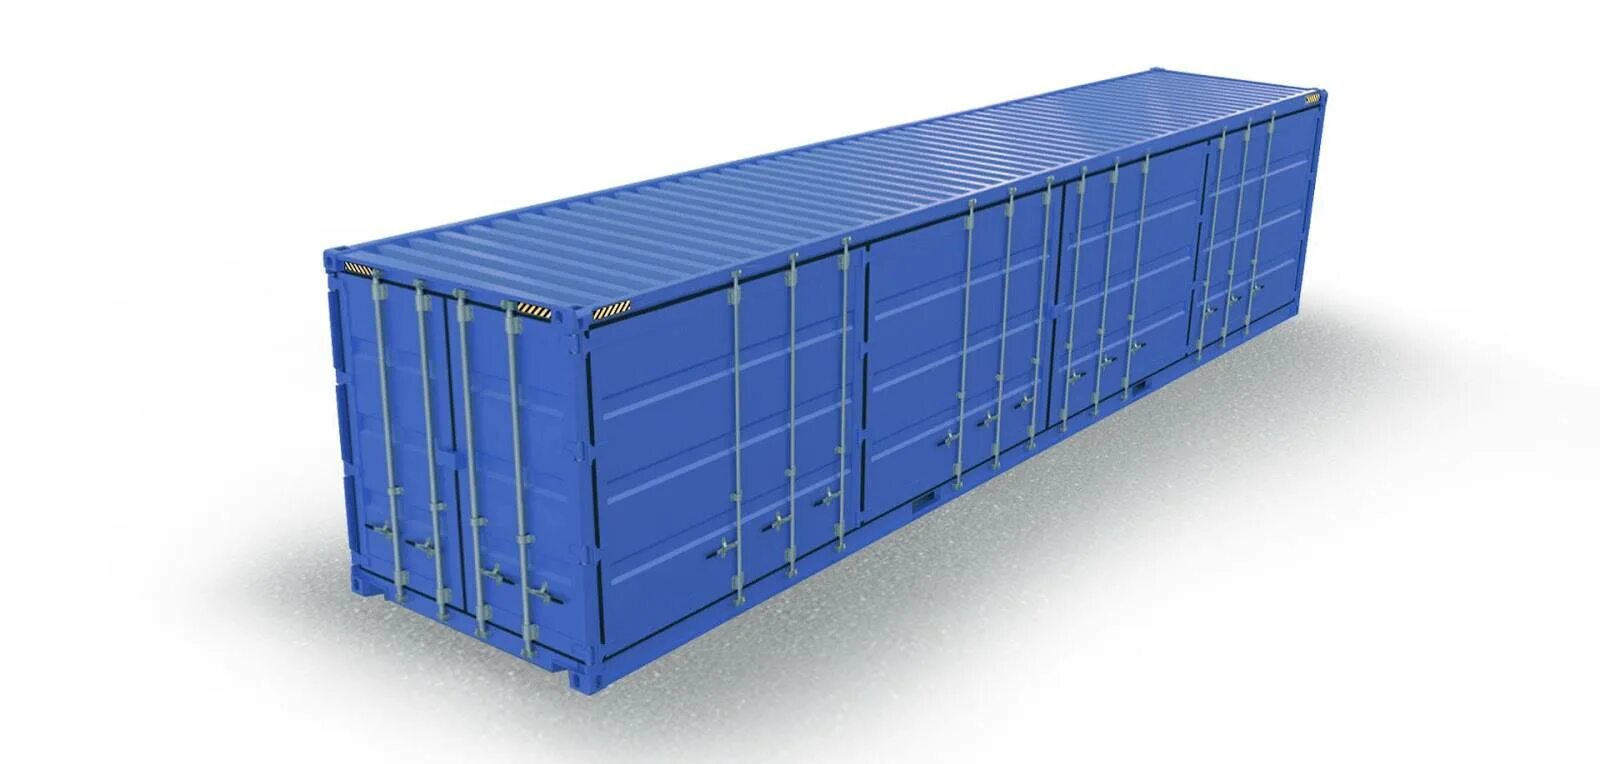 Морской контейнер 45 футов. 45 ФТ контейнер. 45 Футовый прицеп грузовой. 20-Футовый стандартный (Dry Cube) контейнер. DFDS контейнер 45 футов.